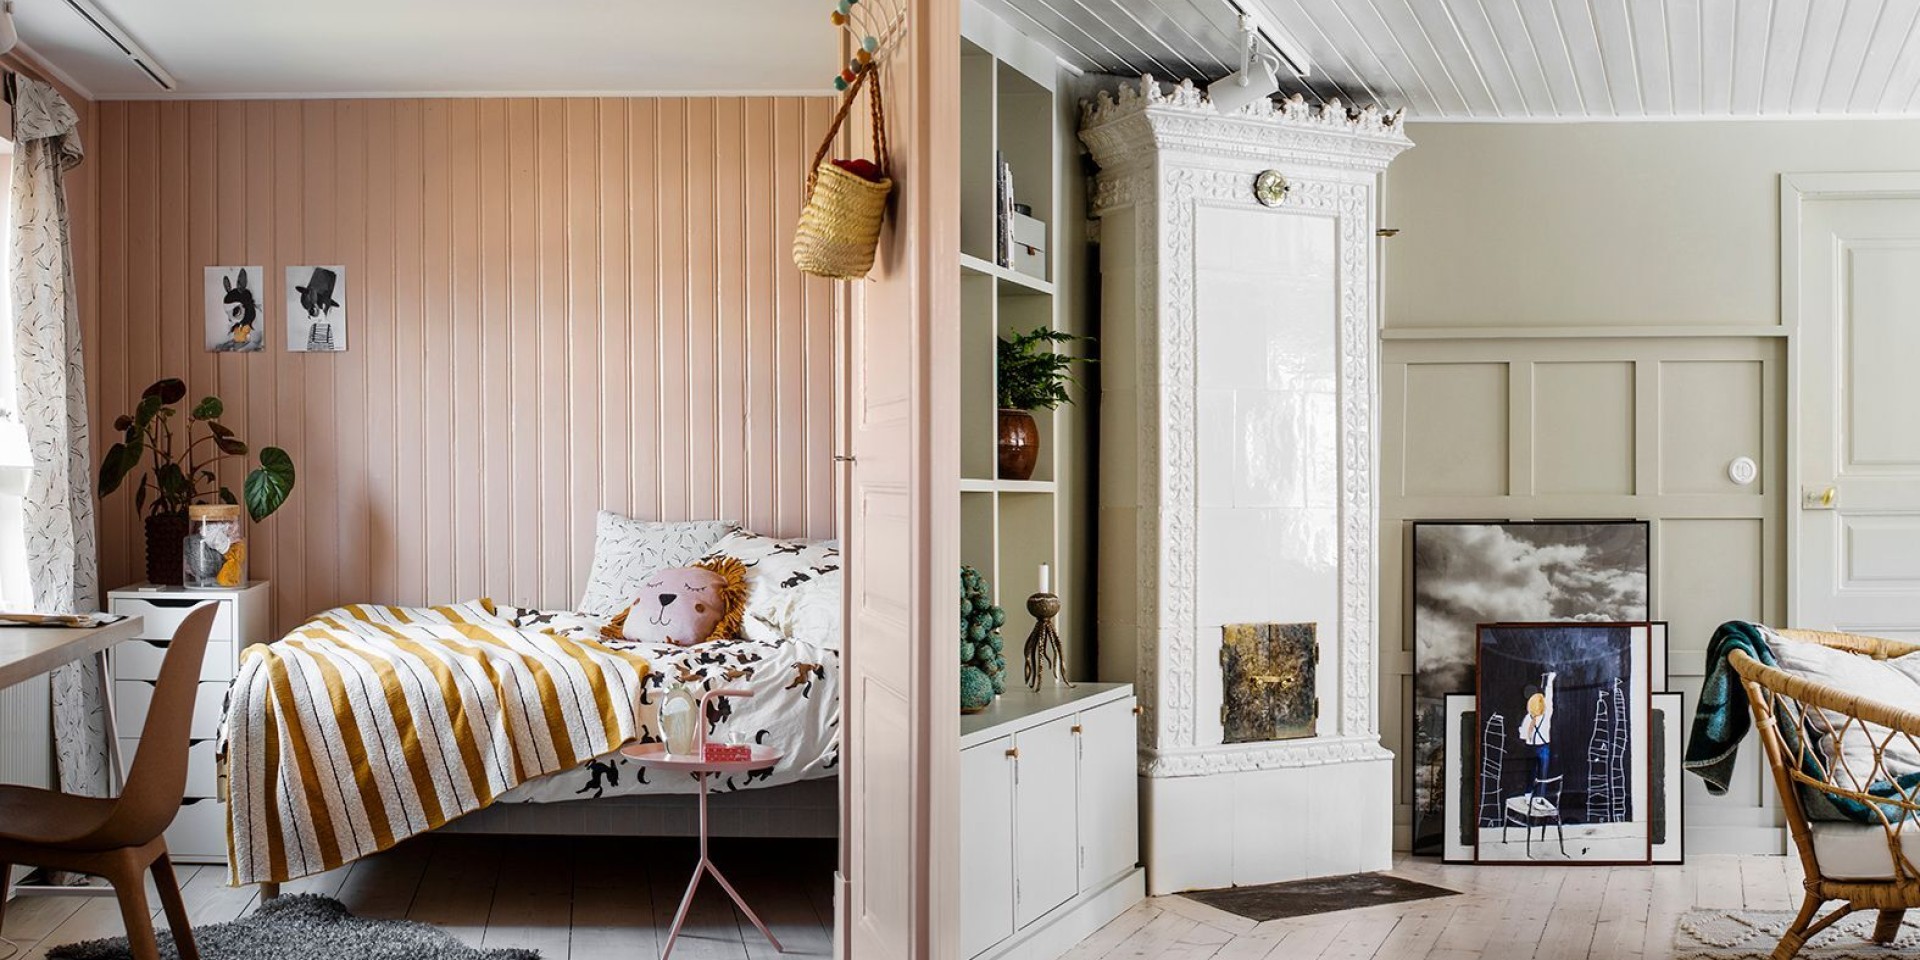 Hemma hos Ida Ståhl är färgpaletten inspirerad av naturen, barnrummet är målat i kulören old rose och vardagsrummet i gråtrut